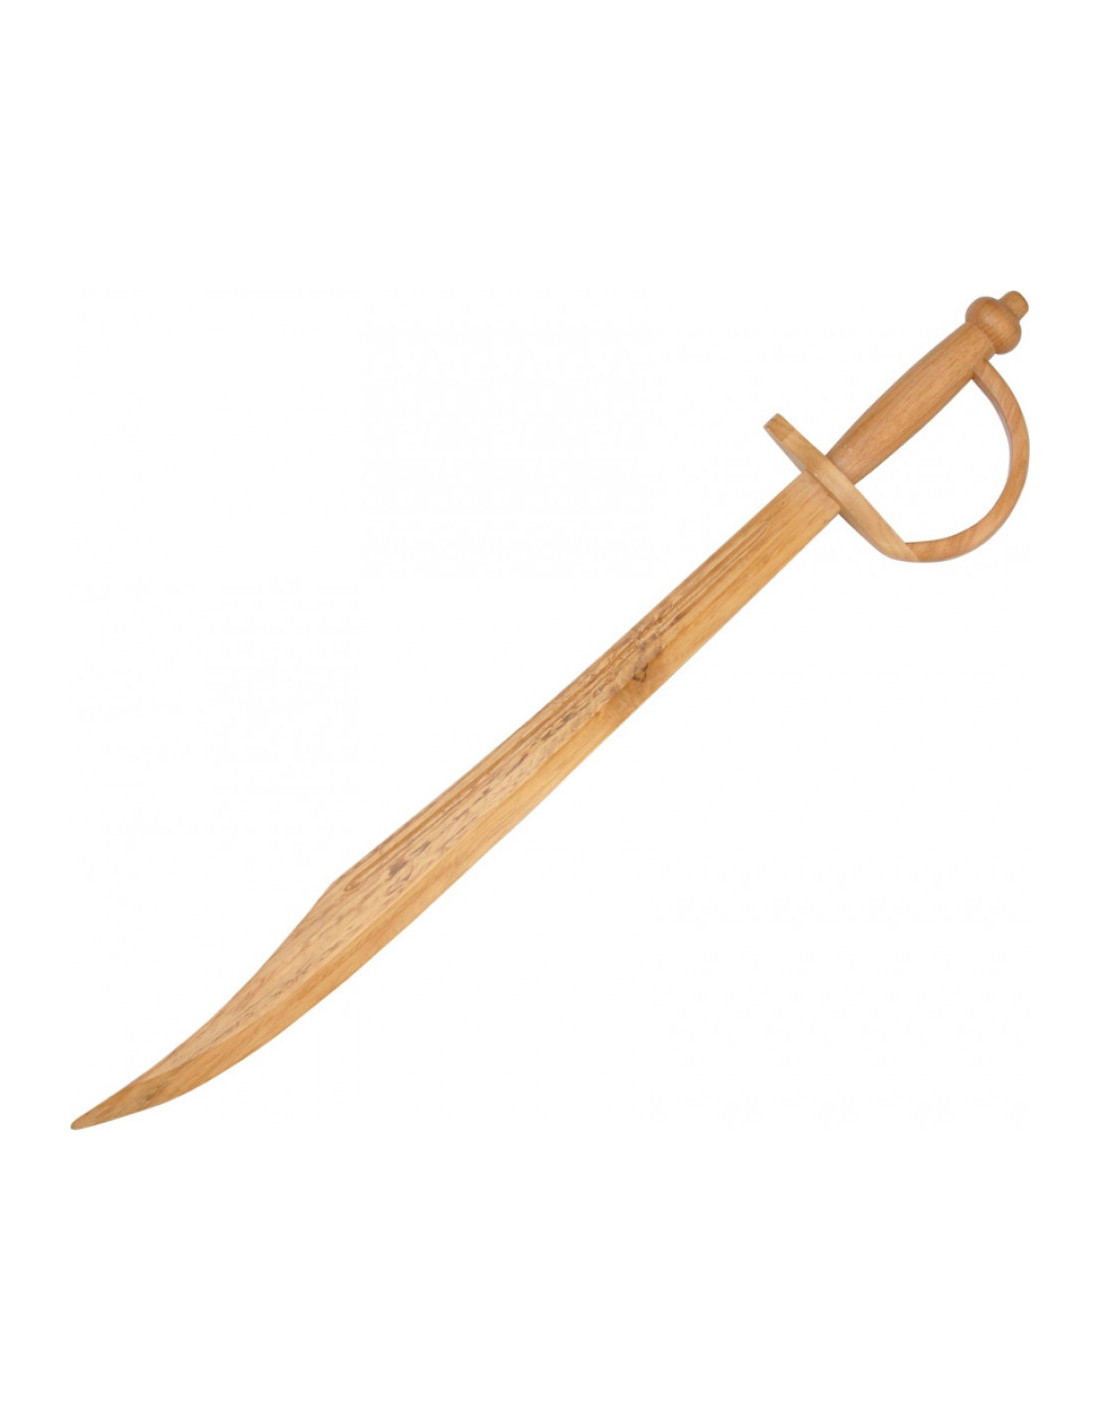 Comprar Espada pirata medieval Sword 60cm Armas y Escudos online